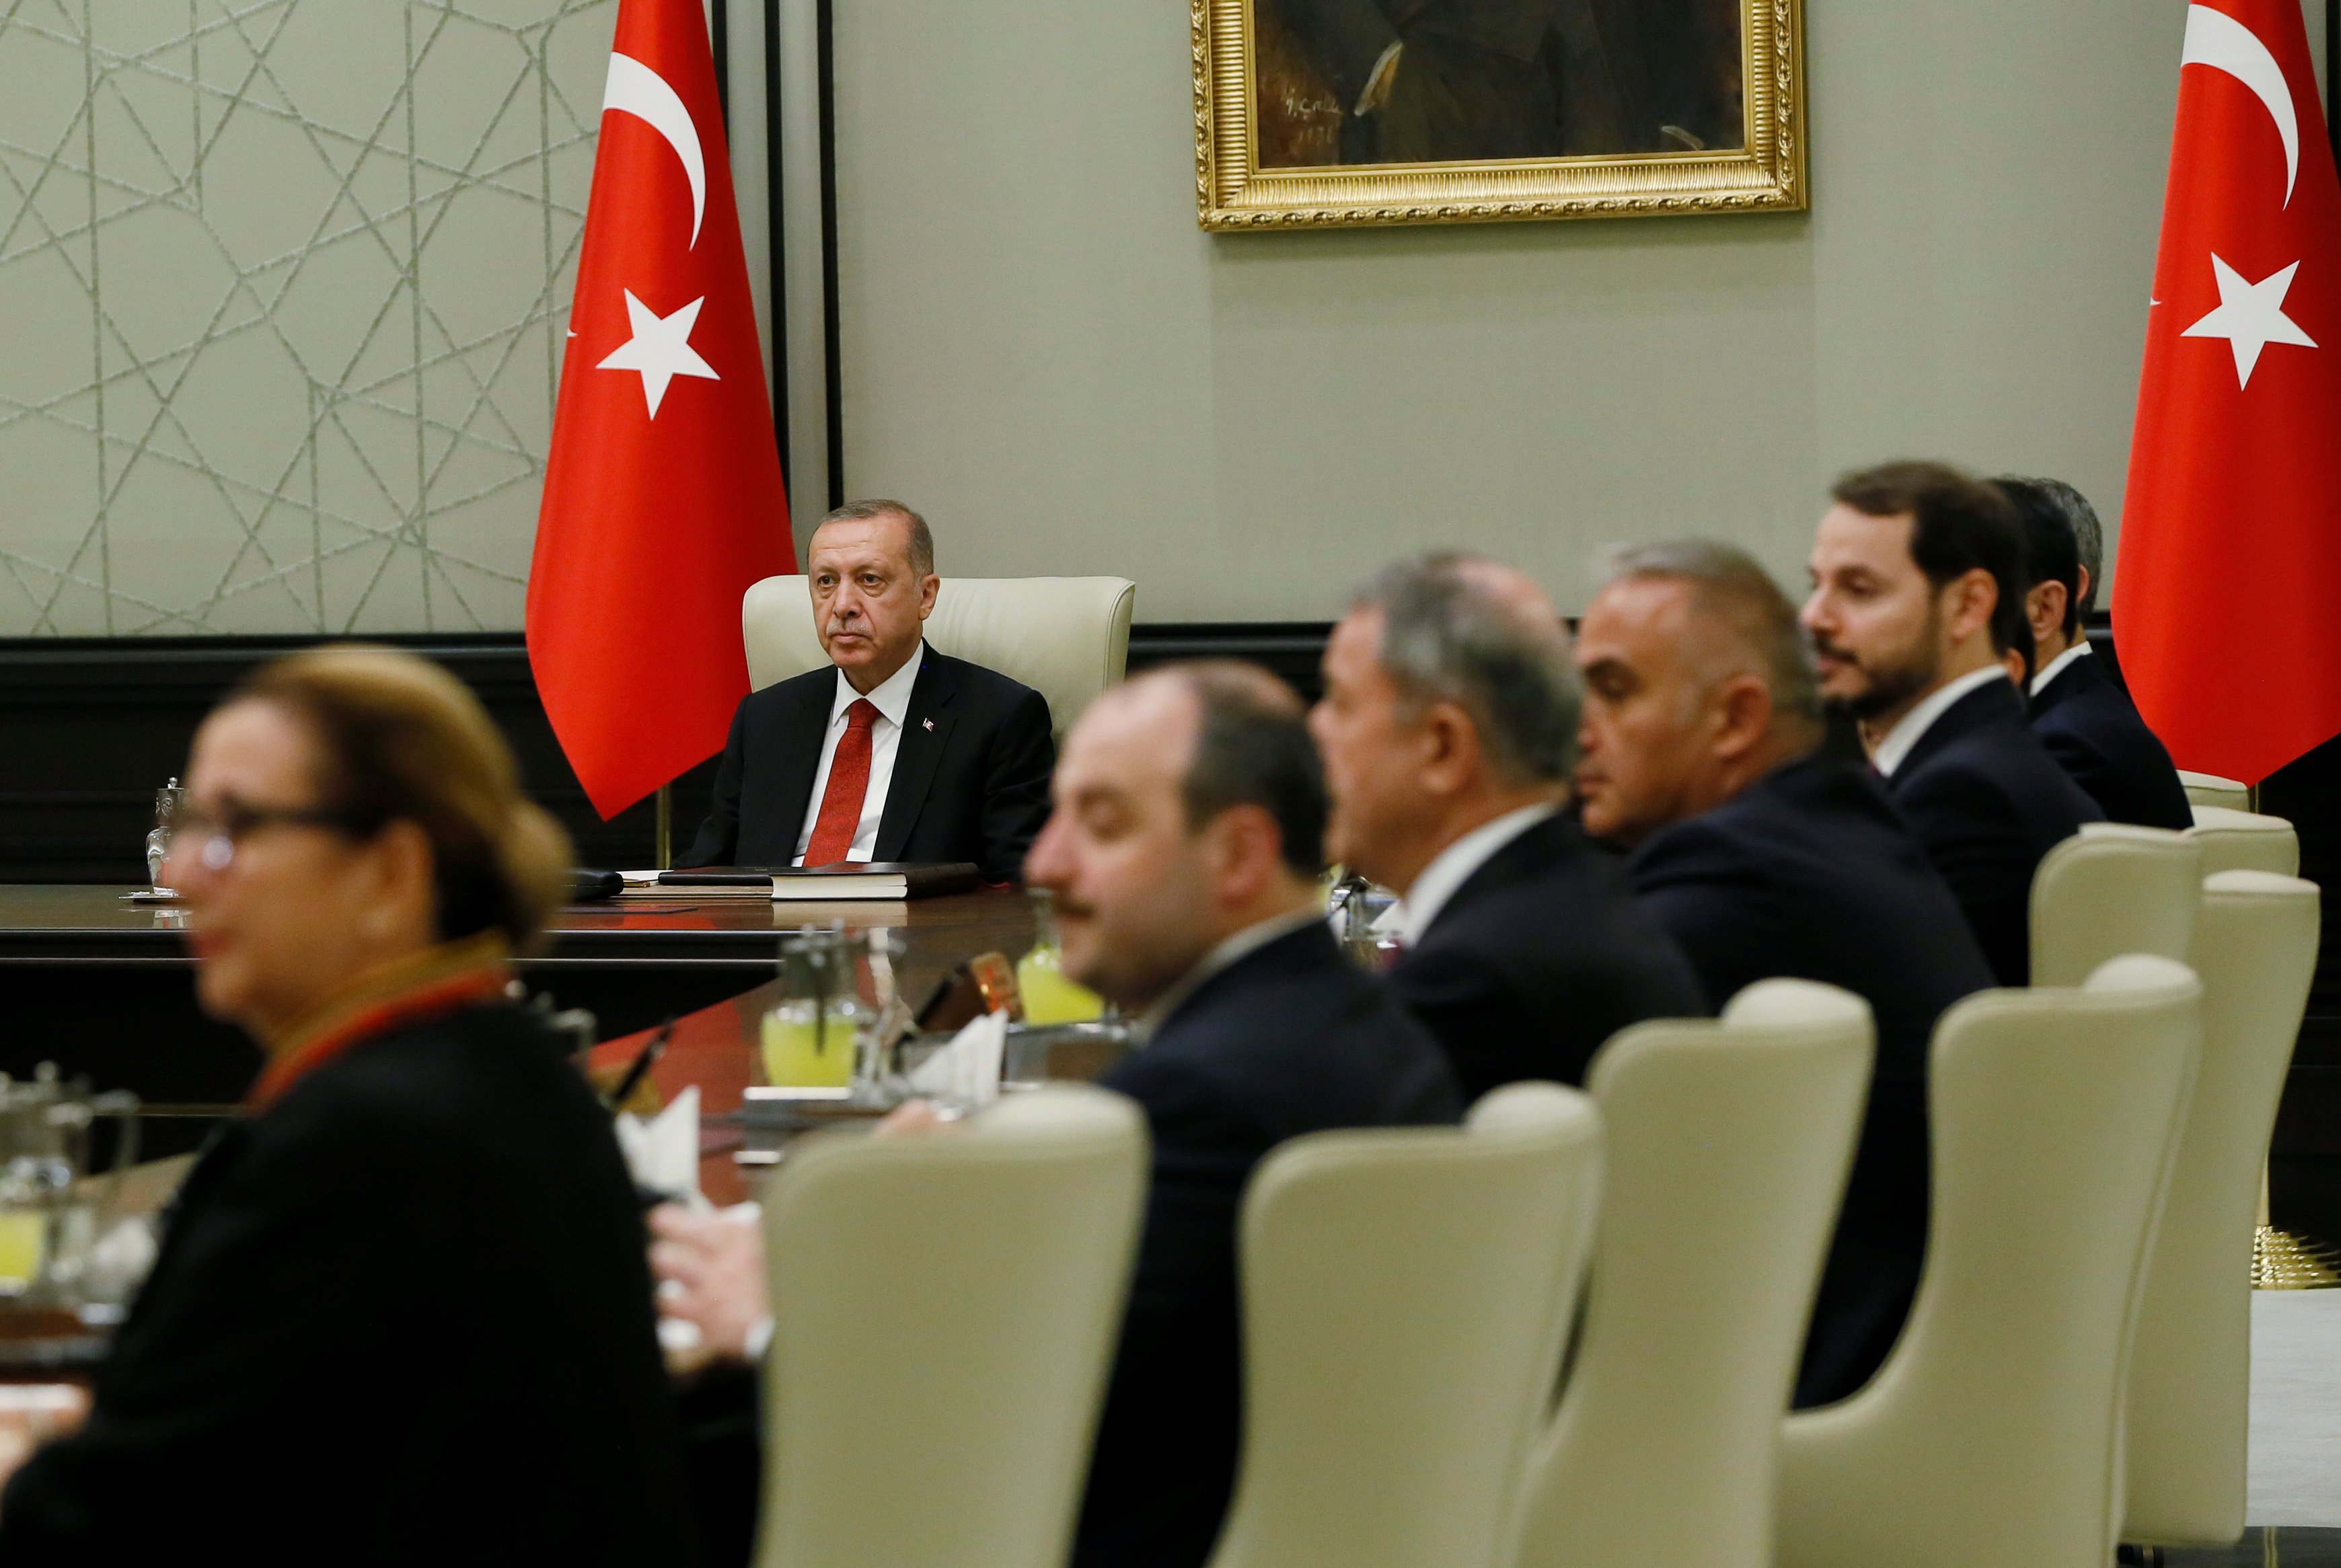 الرئيس التركي رجب طيب أردوغان يترأس اجتماع لمجلس الوزراء الجديد في العاصمة التركية أنقرة، 13 يوليو 2018. رويترز  